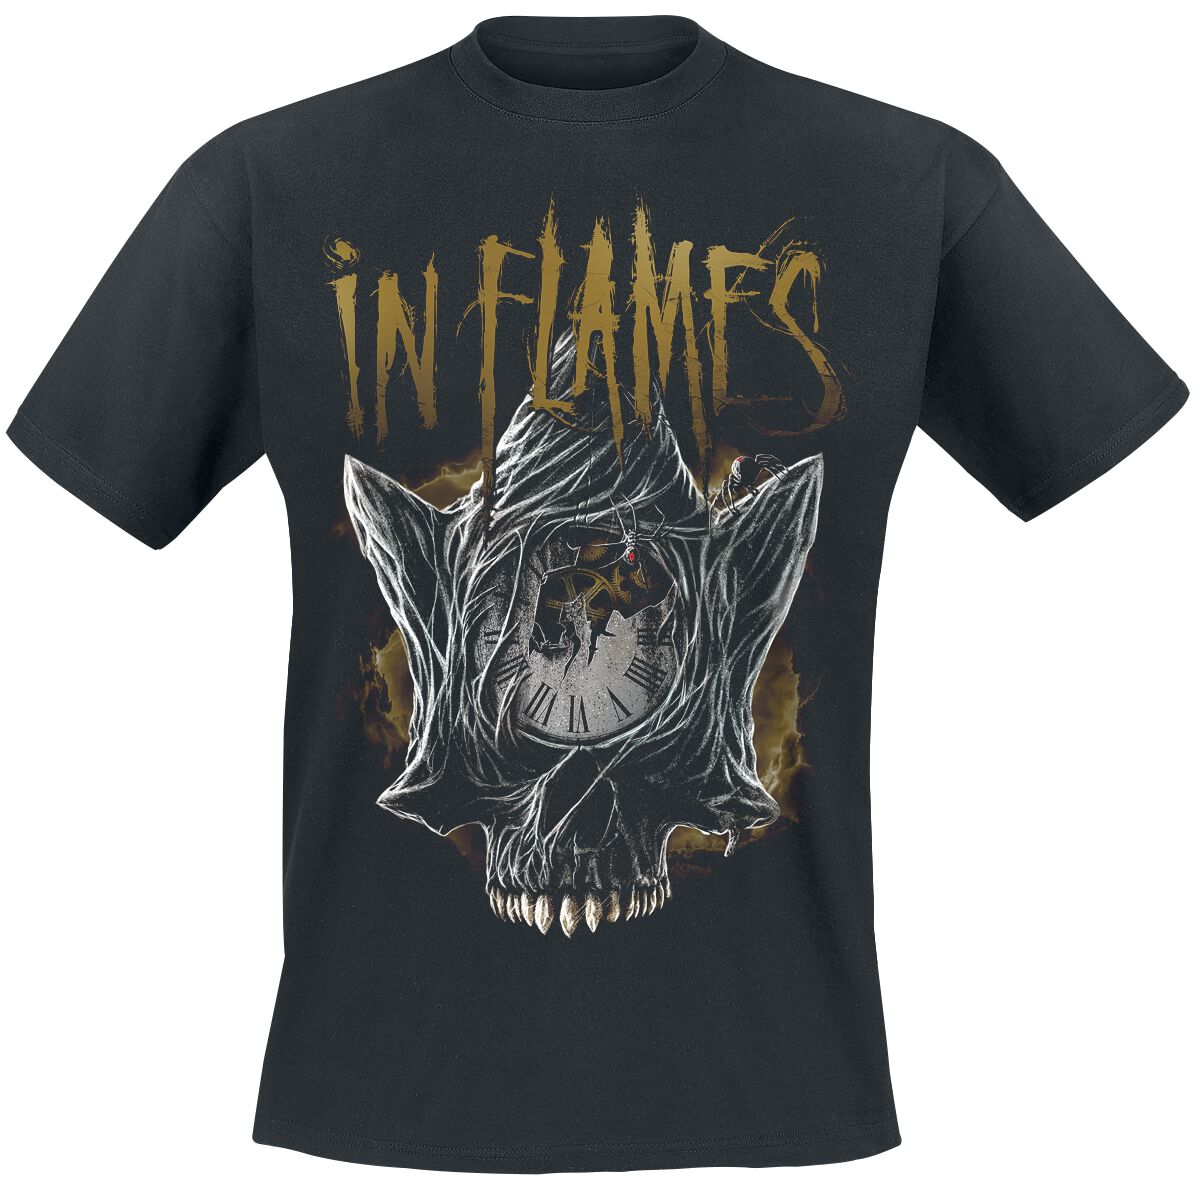 In Flames T-Shirt - Foregone Skull - S bis 3XL - für Männer - Größe S - schwarz  - Lizenziertes Merchandise!